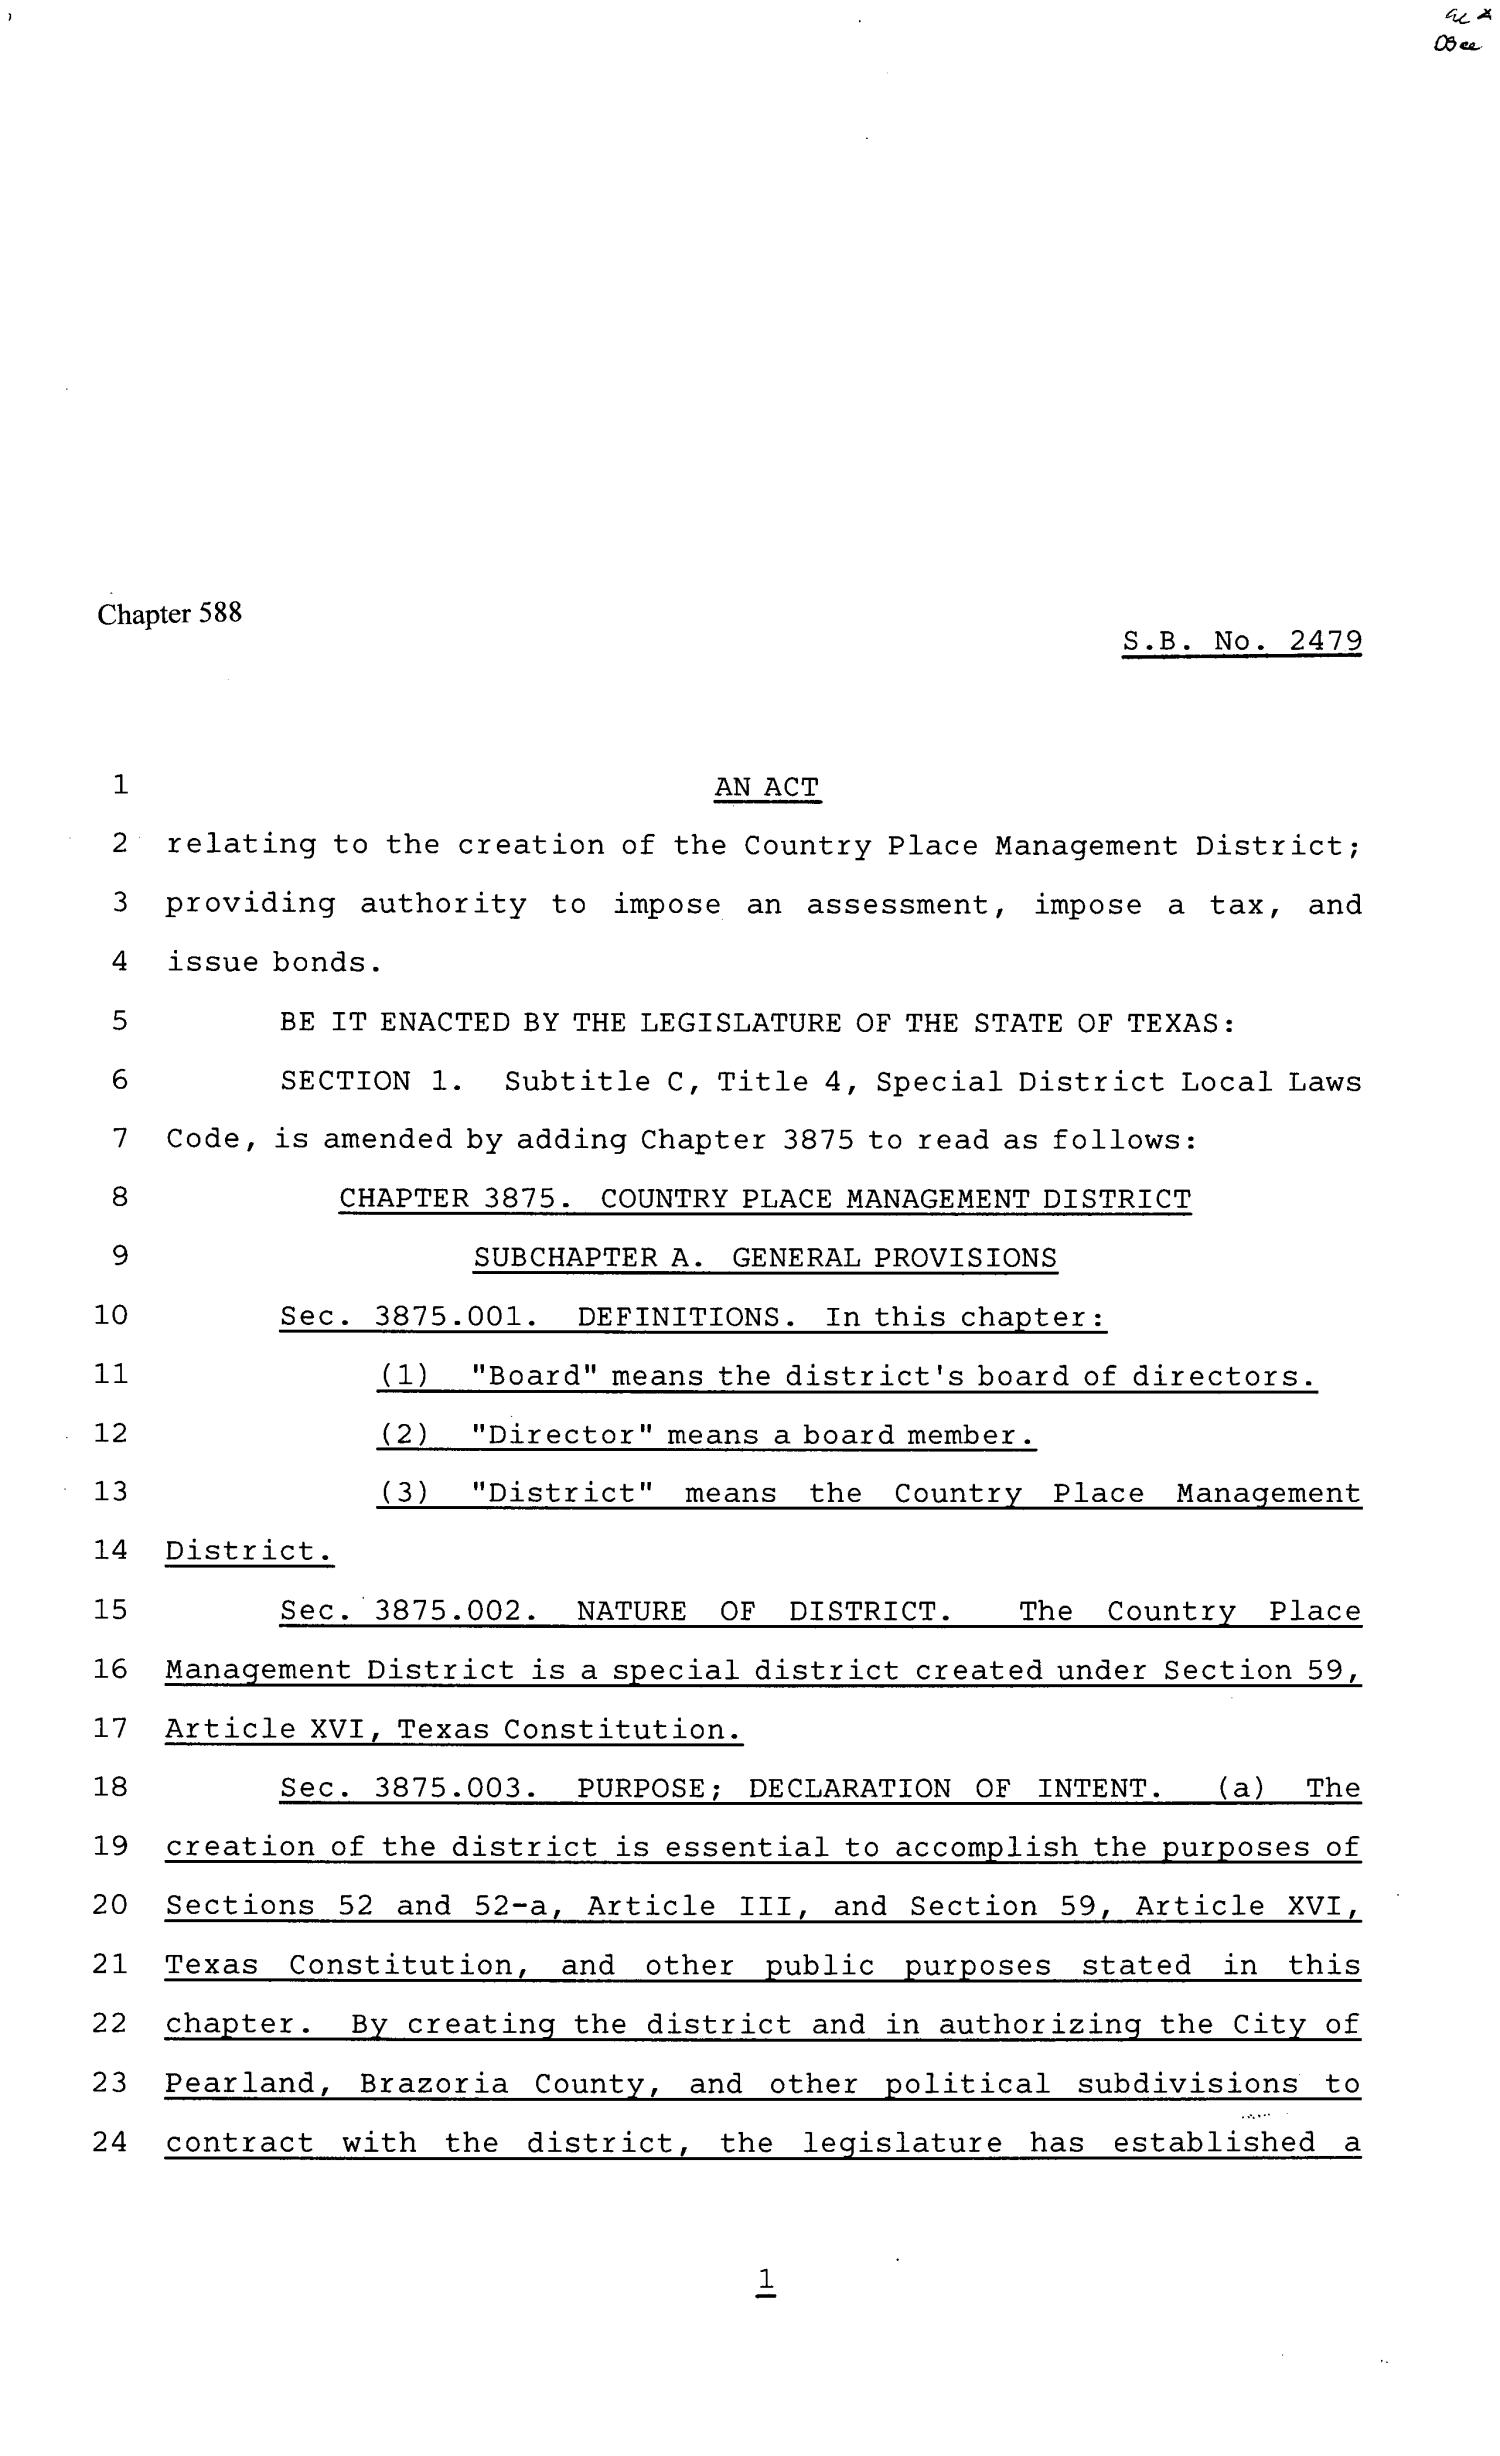 81st Texas Legislature, Senate Bill 2479, Chapter 588
                                                
                                                    [Sequence #]: 1 of 16
                                                